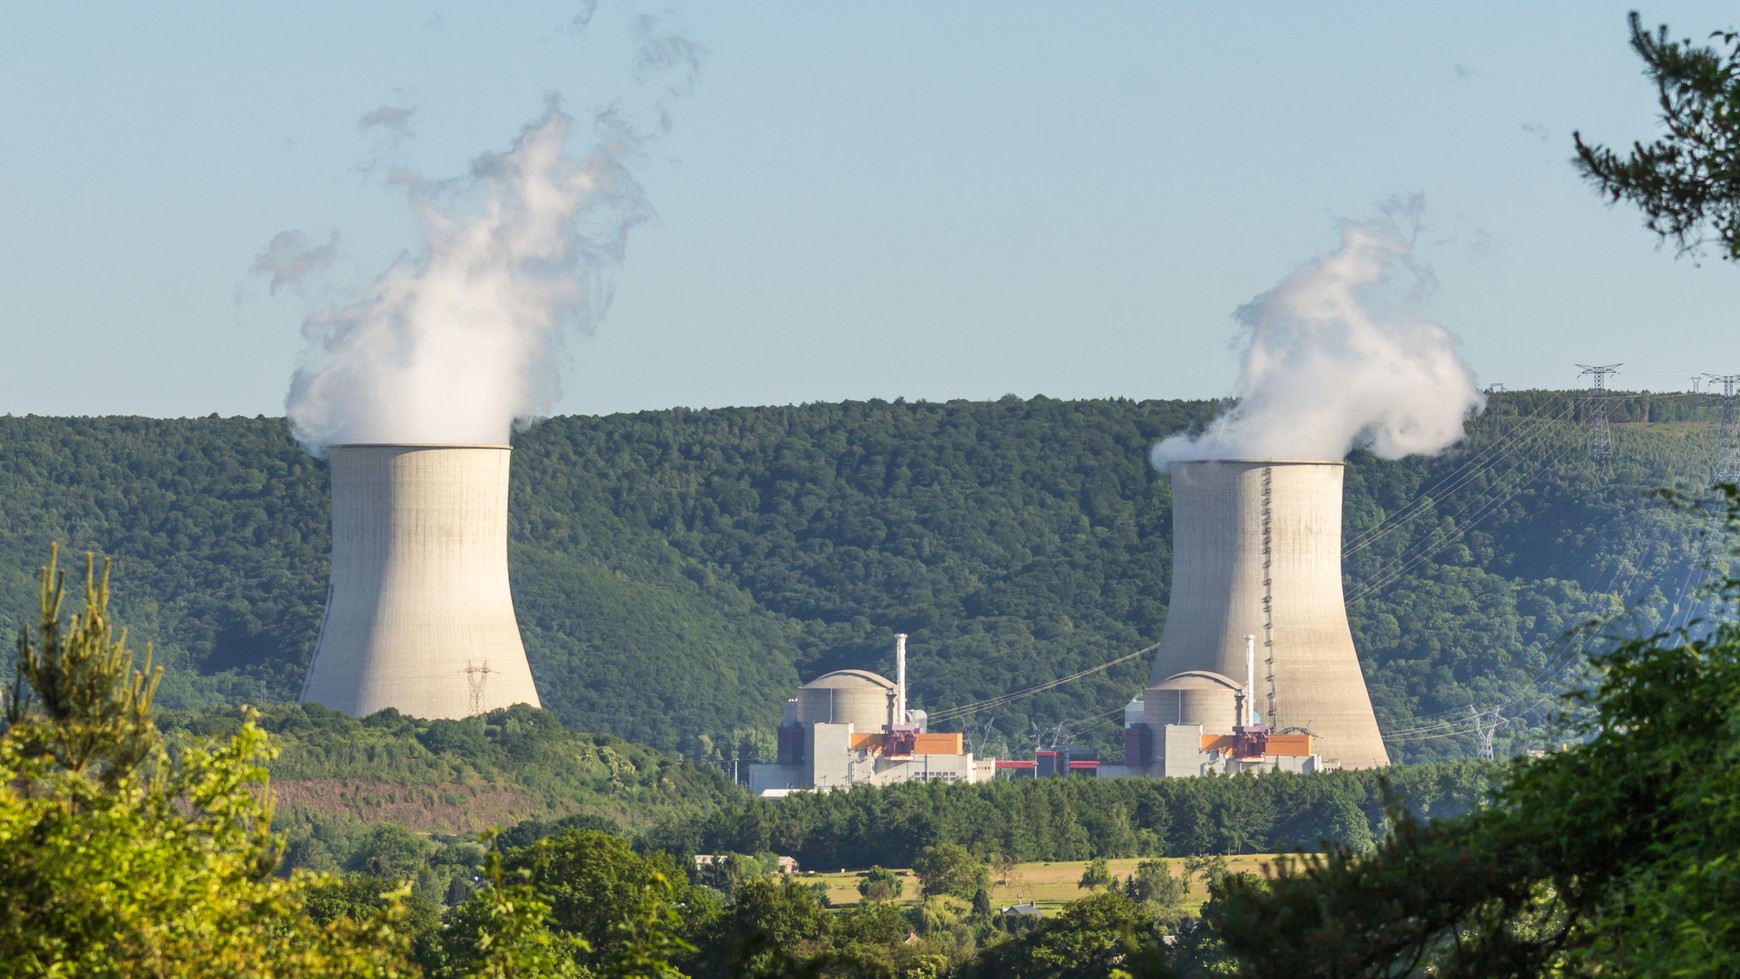 Centrale nucléaire de Chooz, Allemagne. Aujourd'hui en Europe - Mardi 18 avril